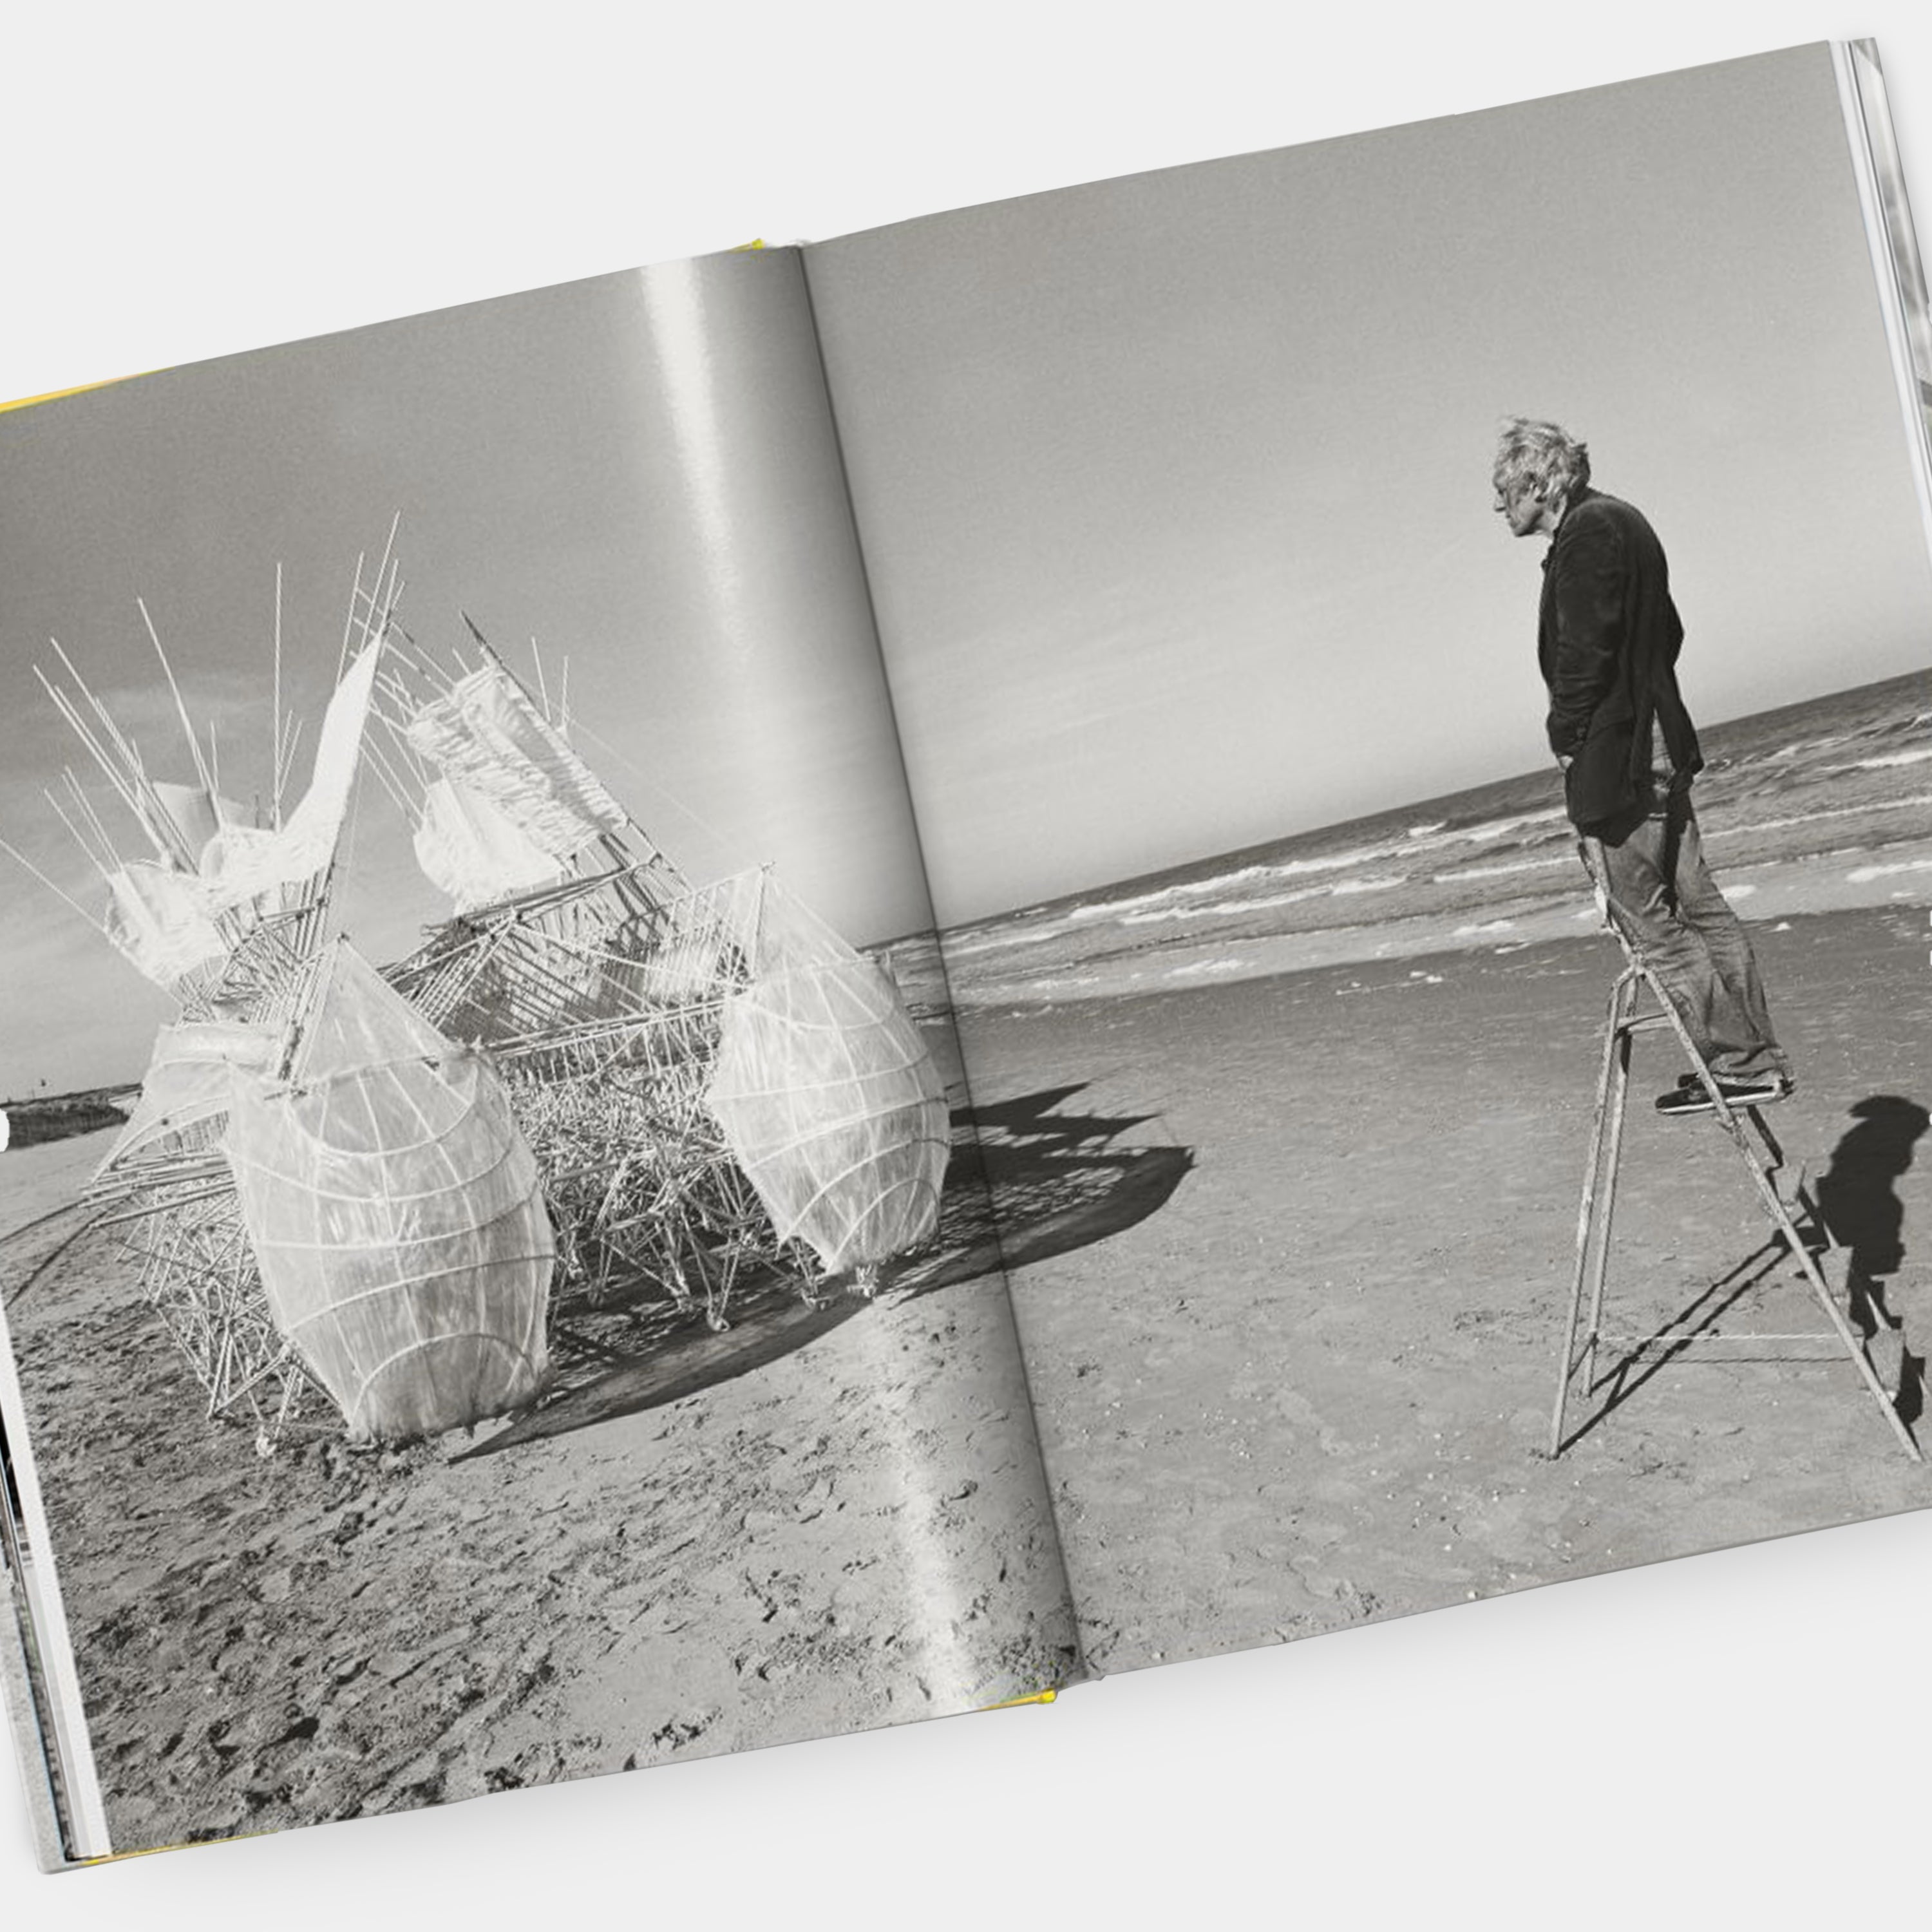 Strandbeest. The Dream Machines of Theo Jansen XL Taschen Book